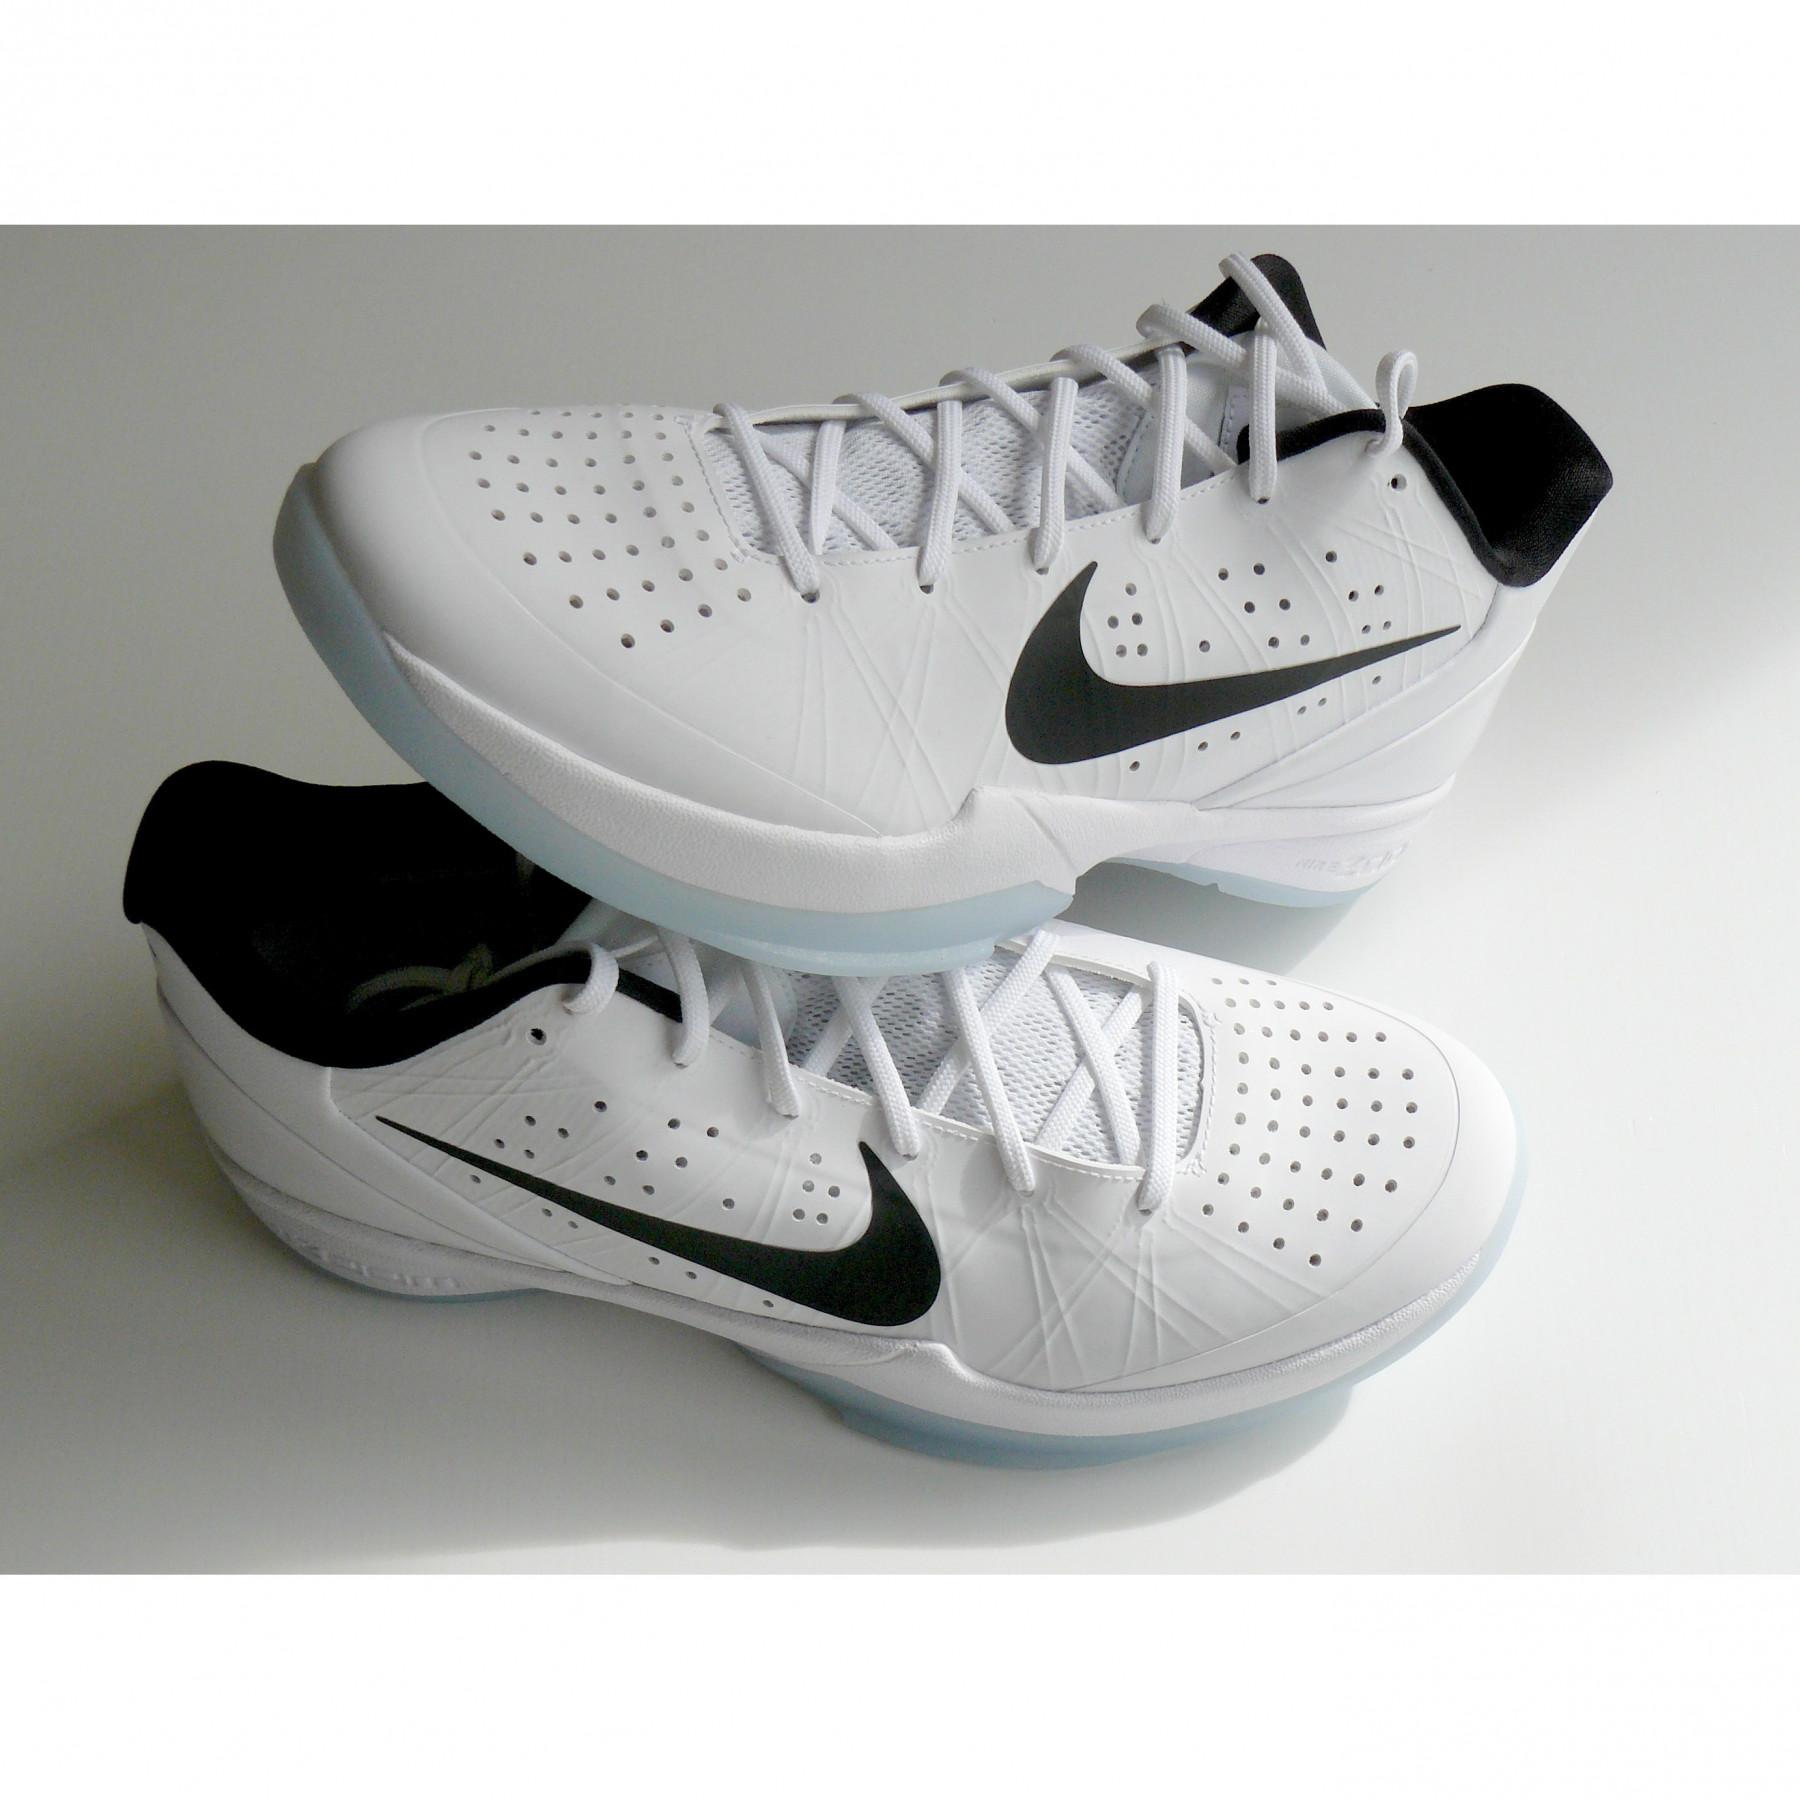 Calor Juramento luces Zapatos Nike Air Zoom HyperAttack blanc